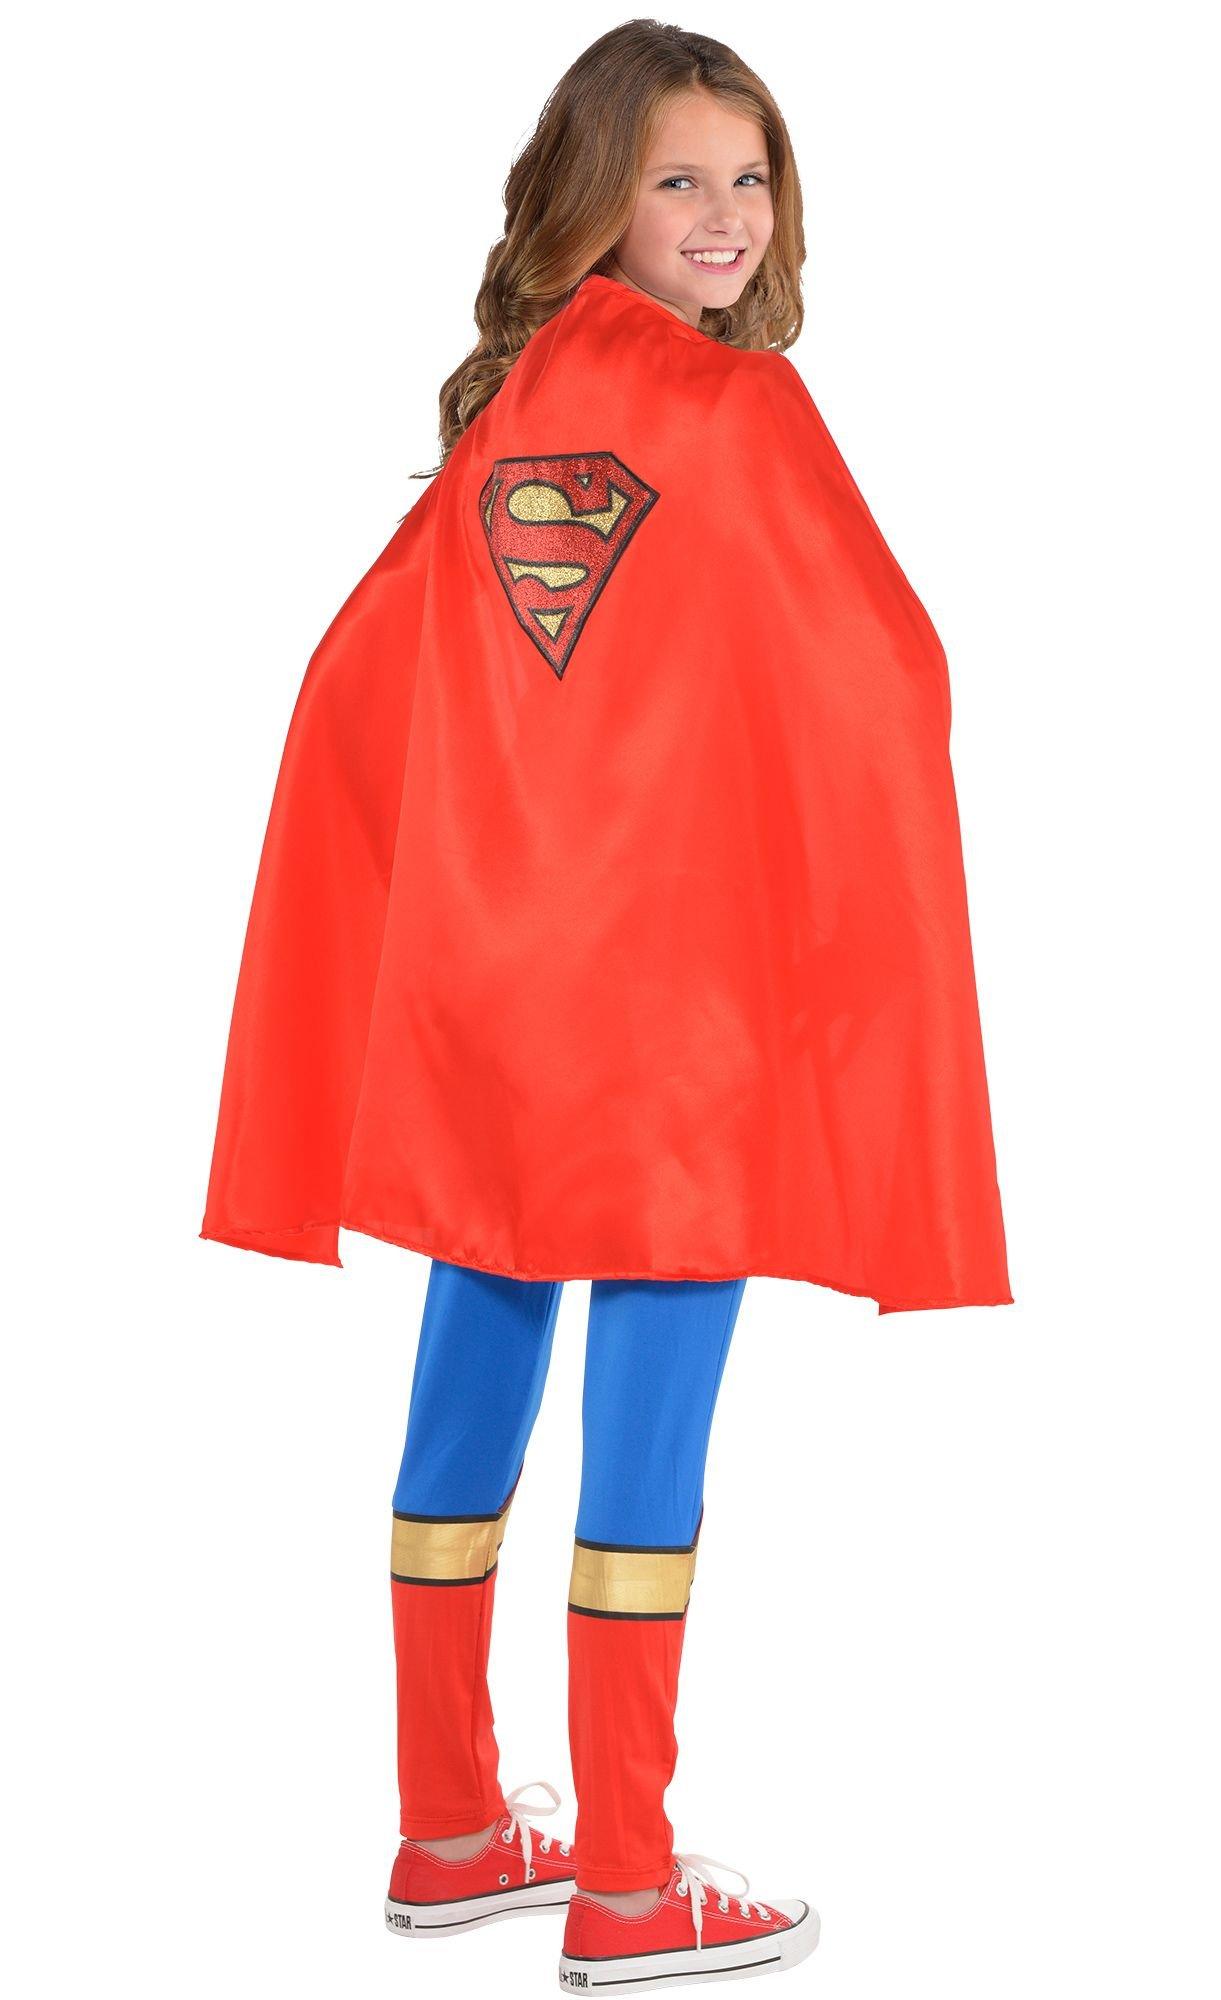 superman cape images